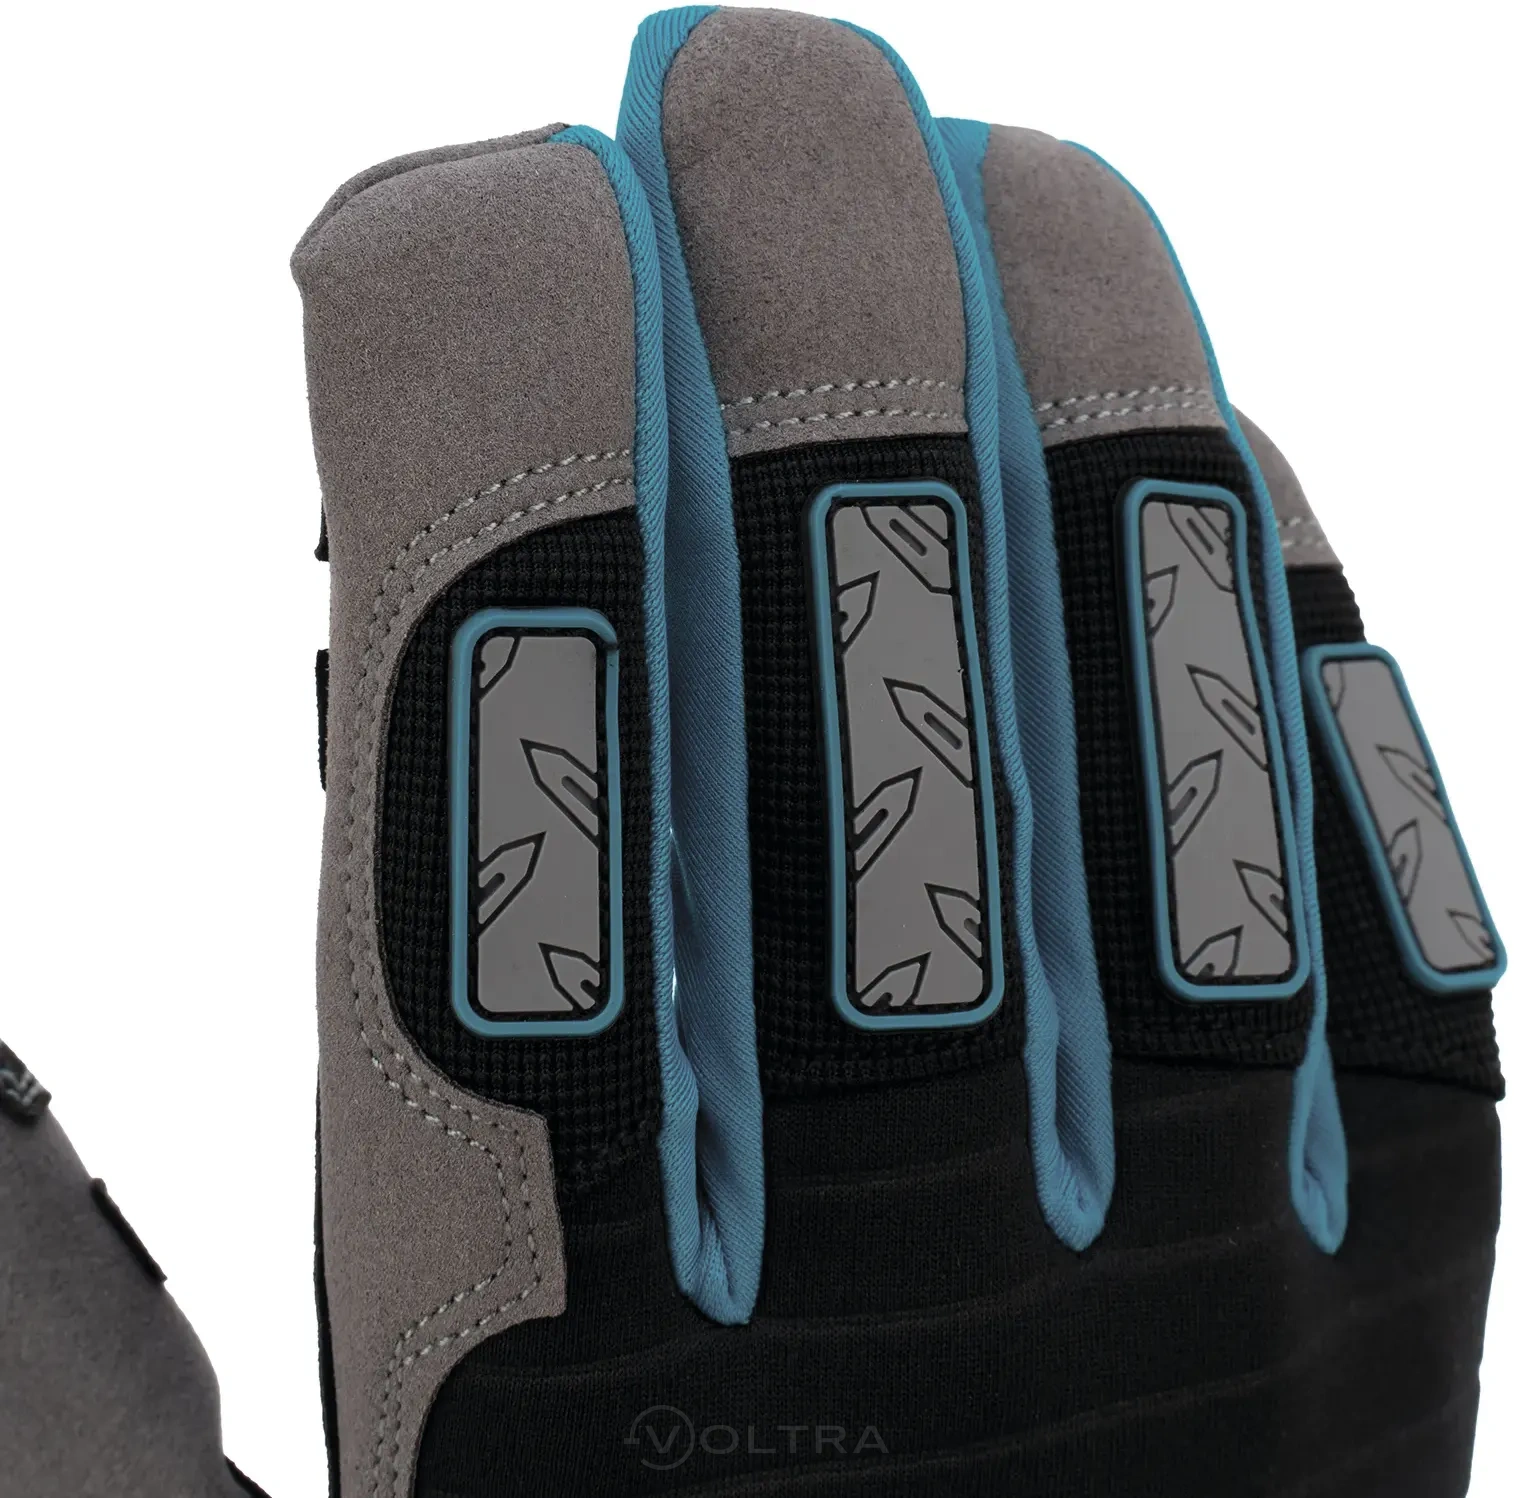 Перчатки универсальные усиленные с защитными накладками DELUXE размер XL (10) Gross (90326)